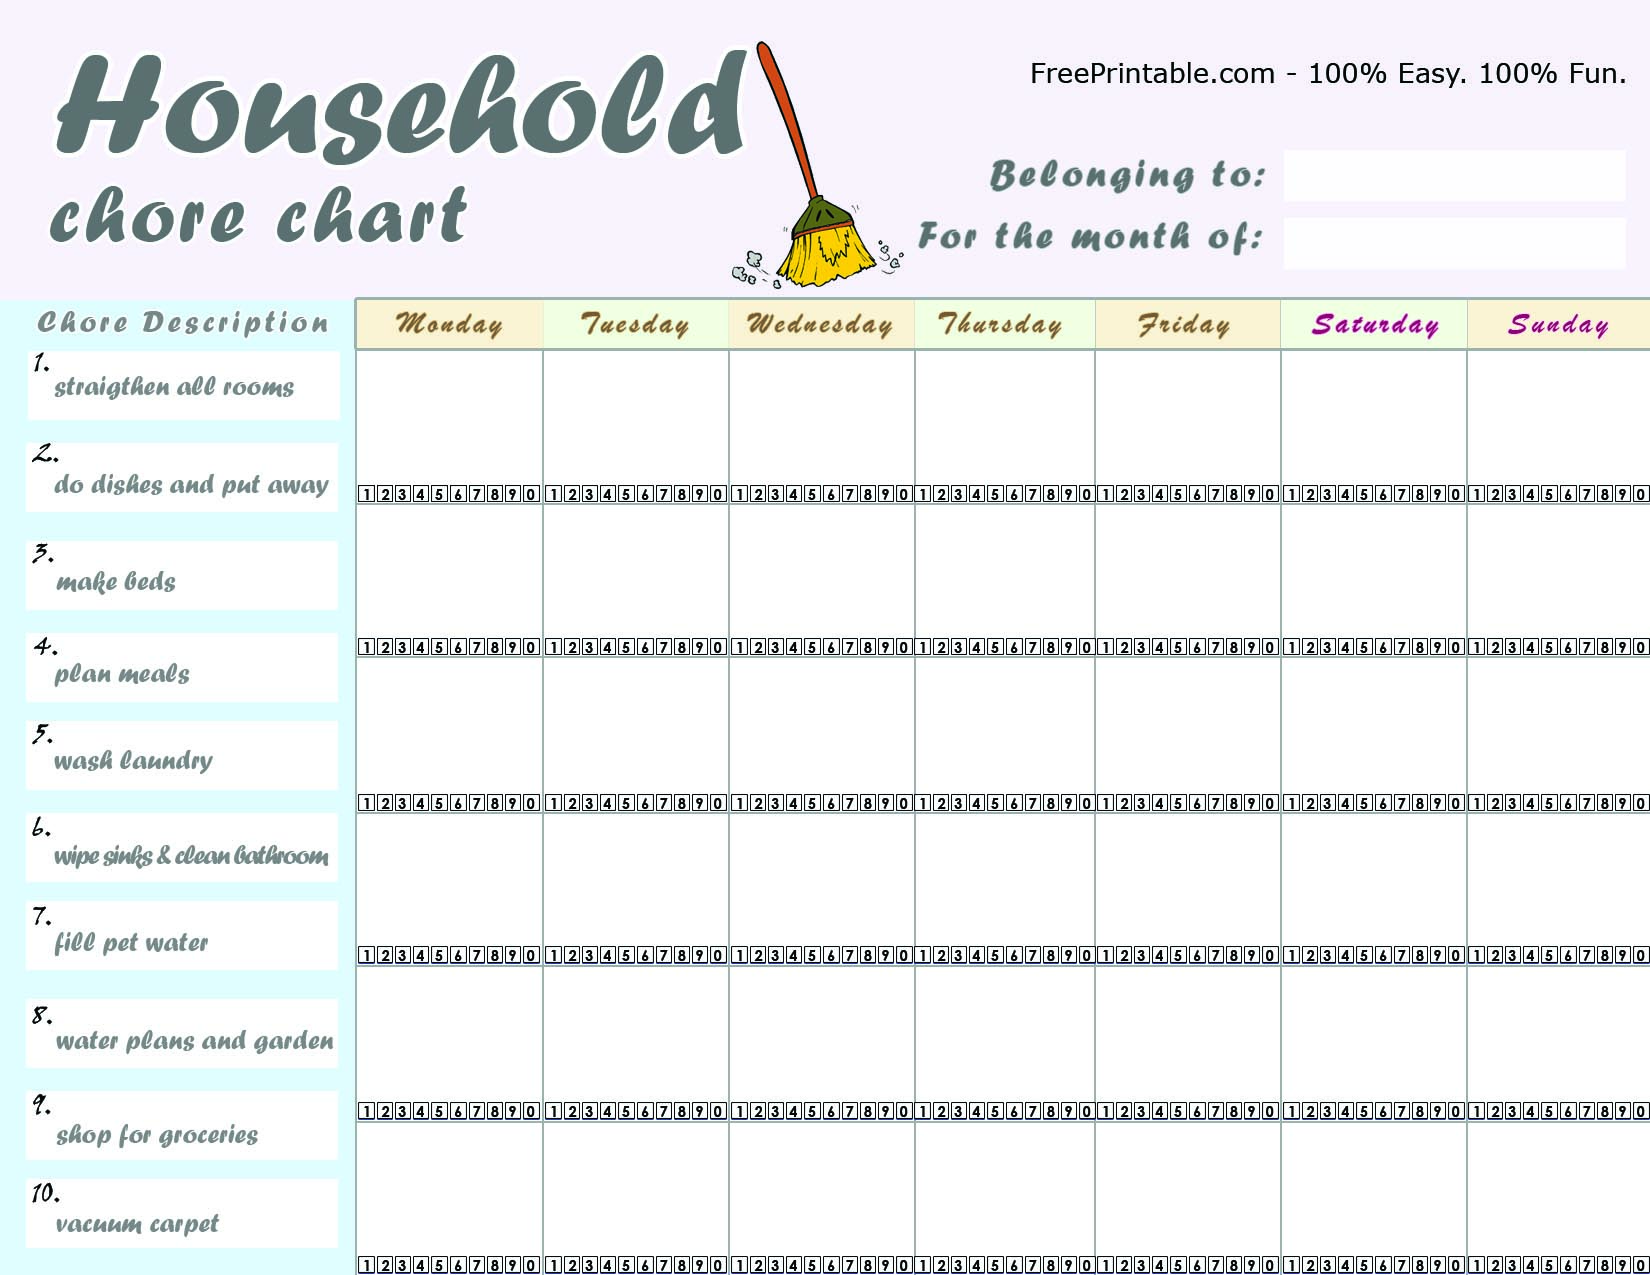 Sample Household Chore List